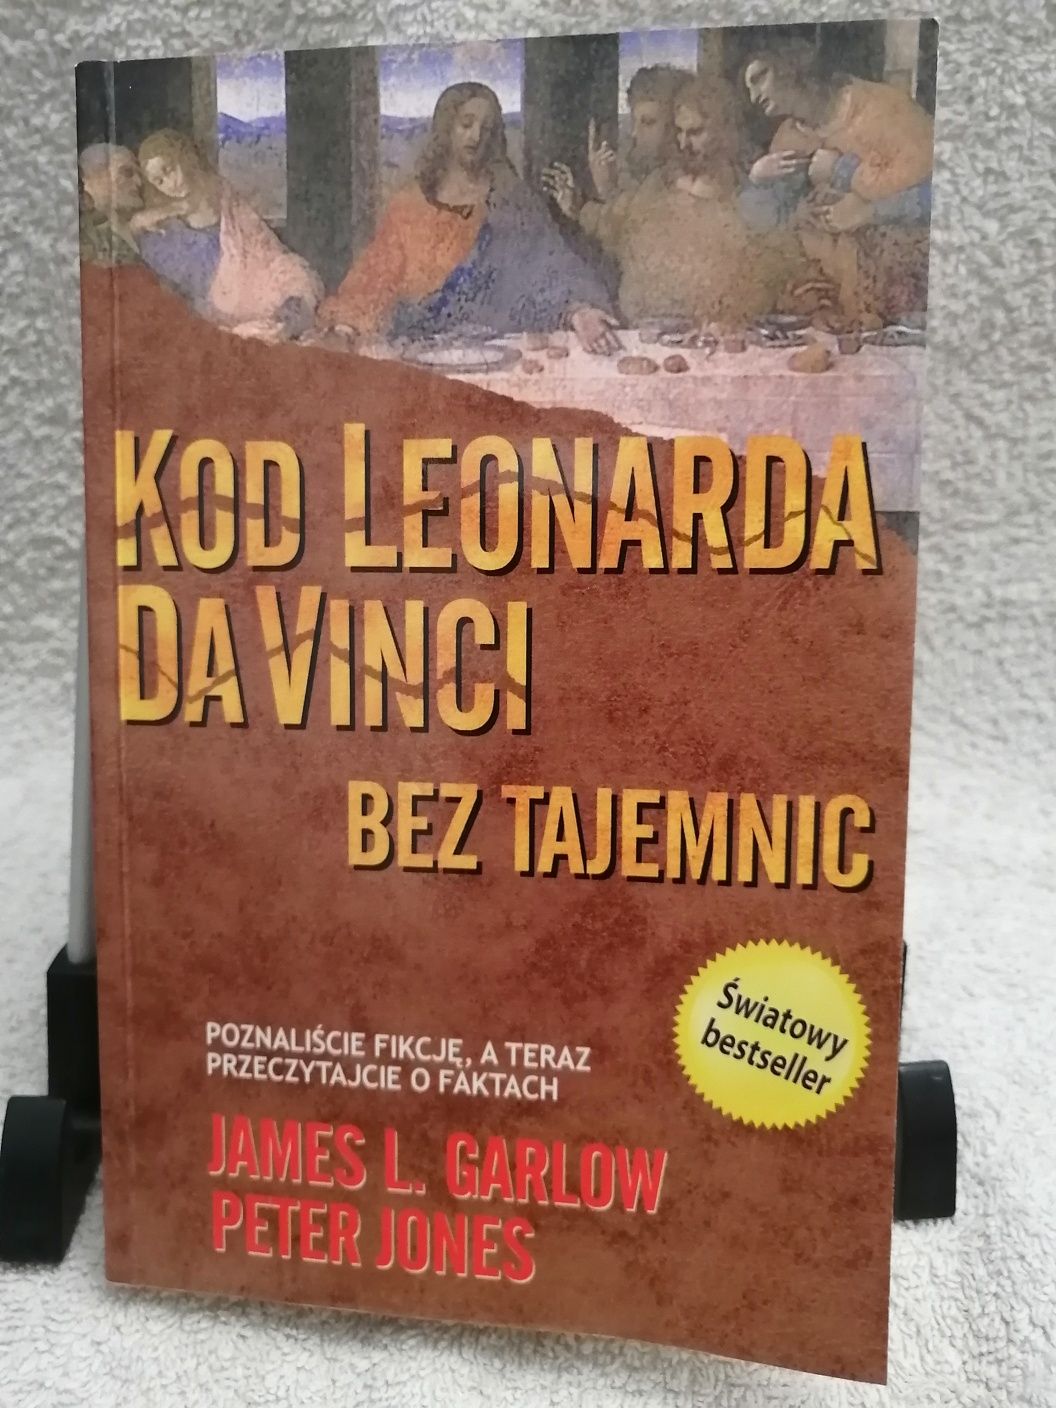 James L. Garlow, Peter Jones, Kod Leonarda da Vinci bez tajemnic